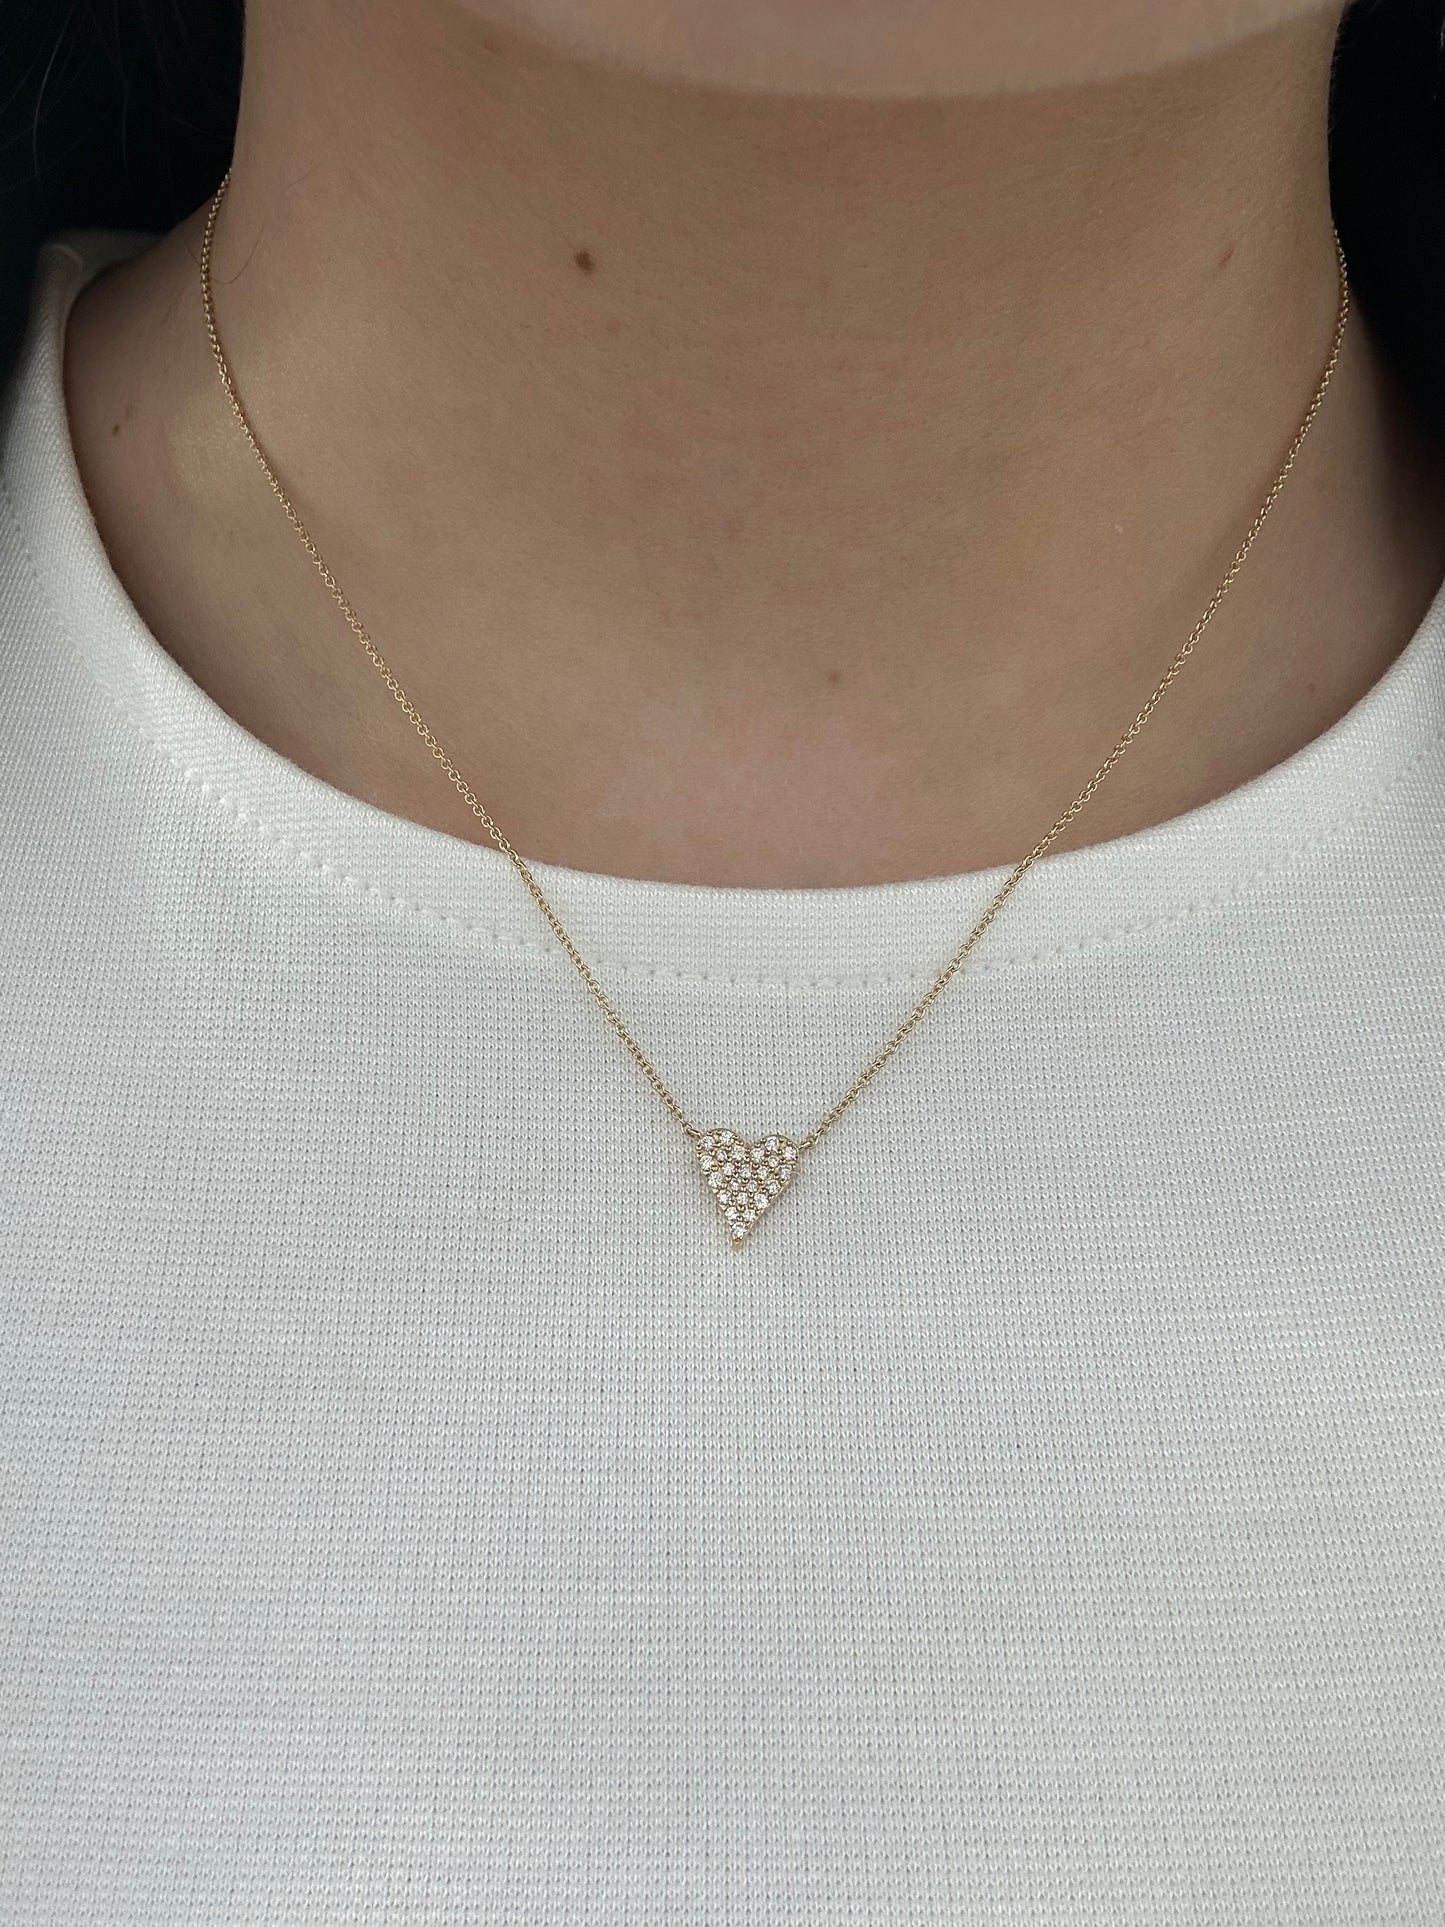 Pave Diamond Heart Necklace